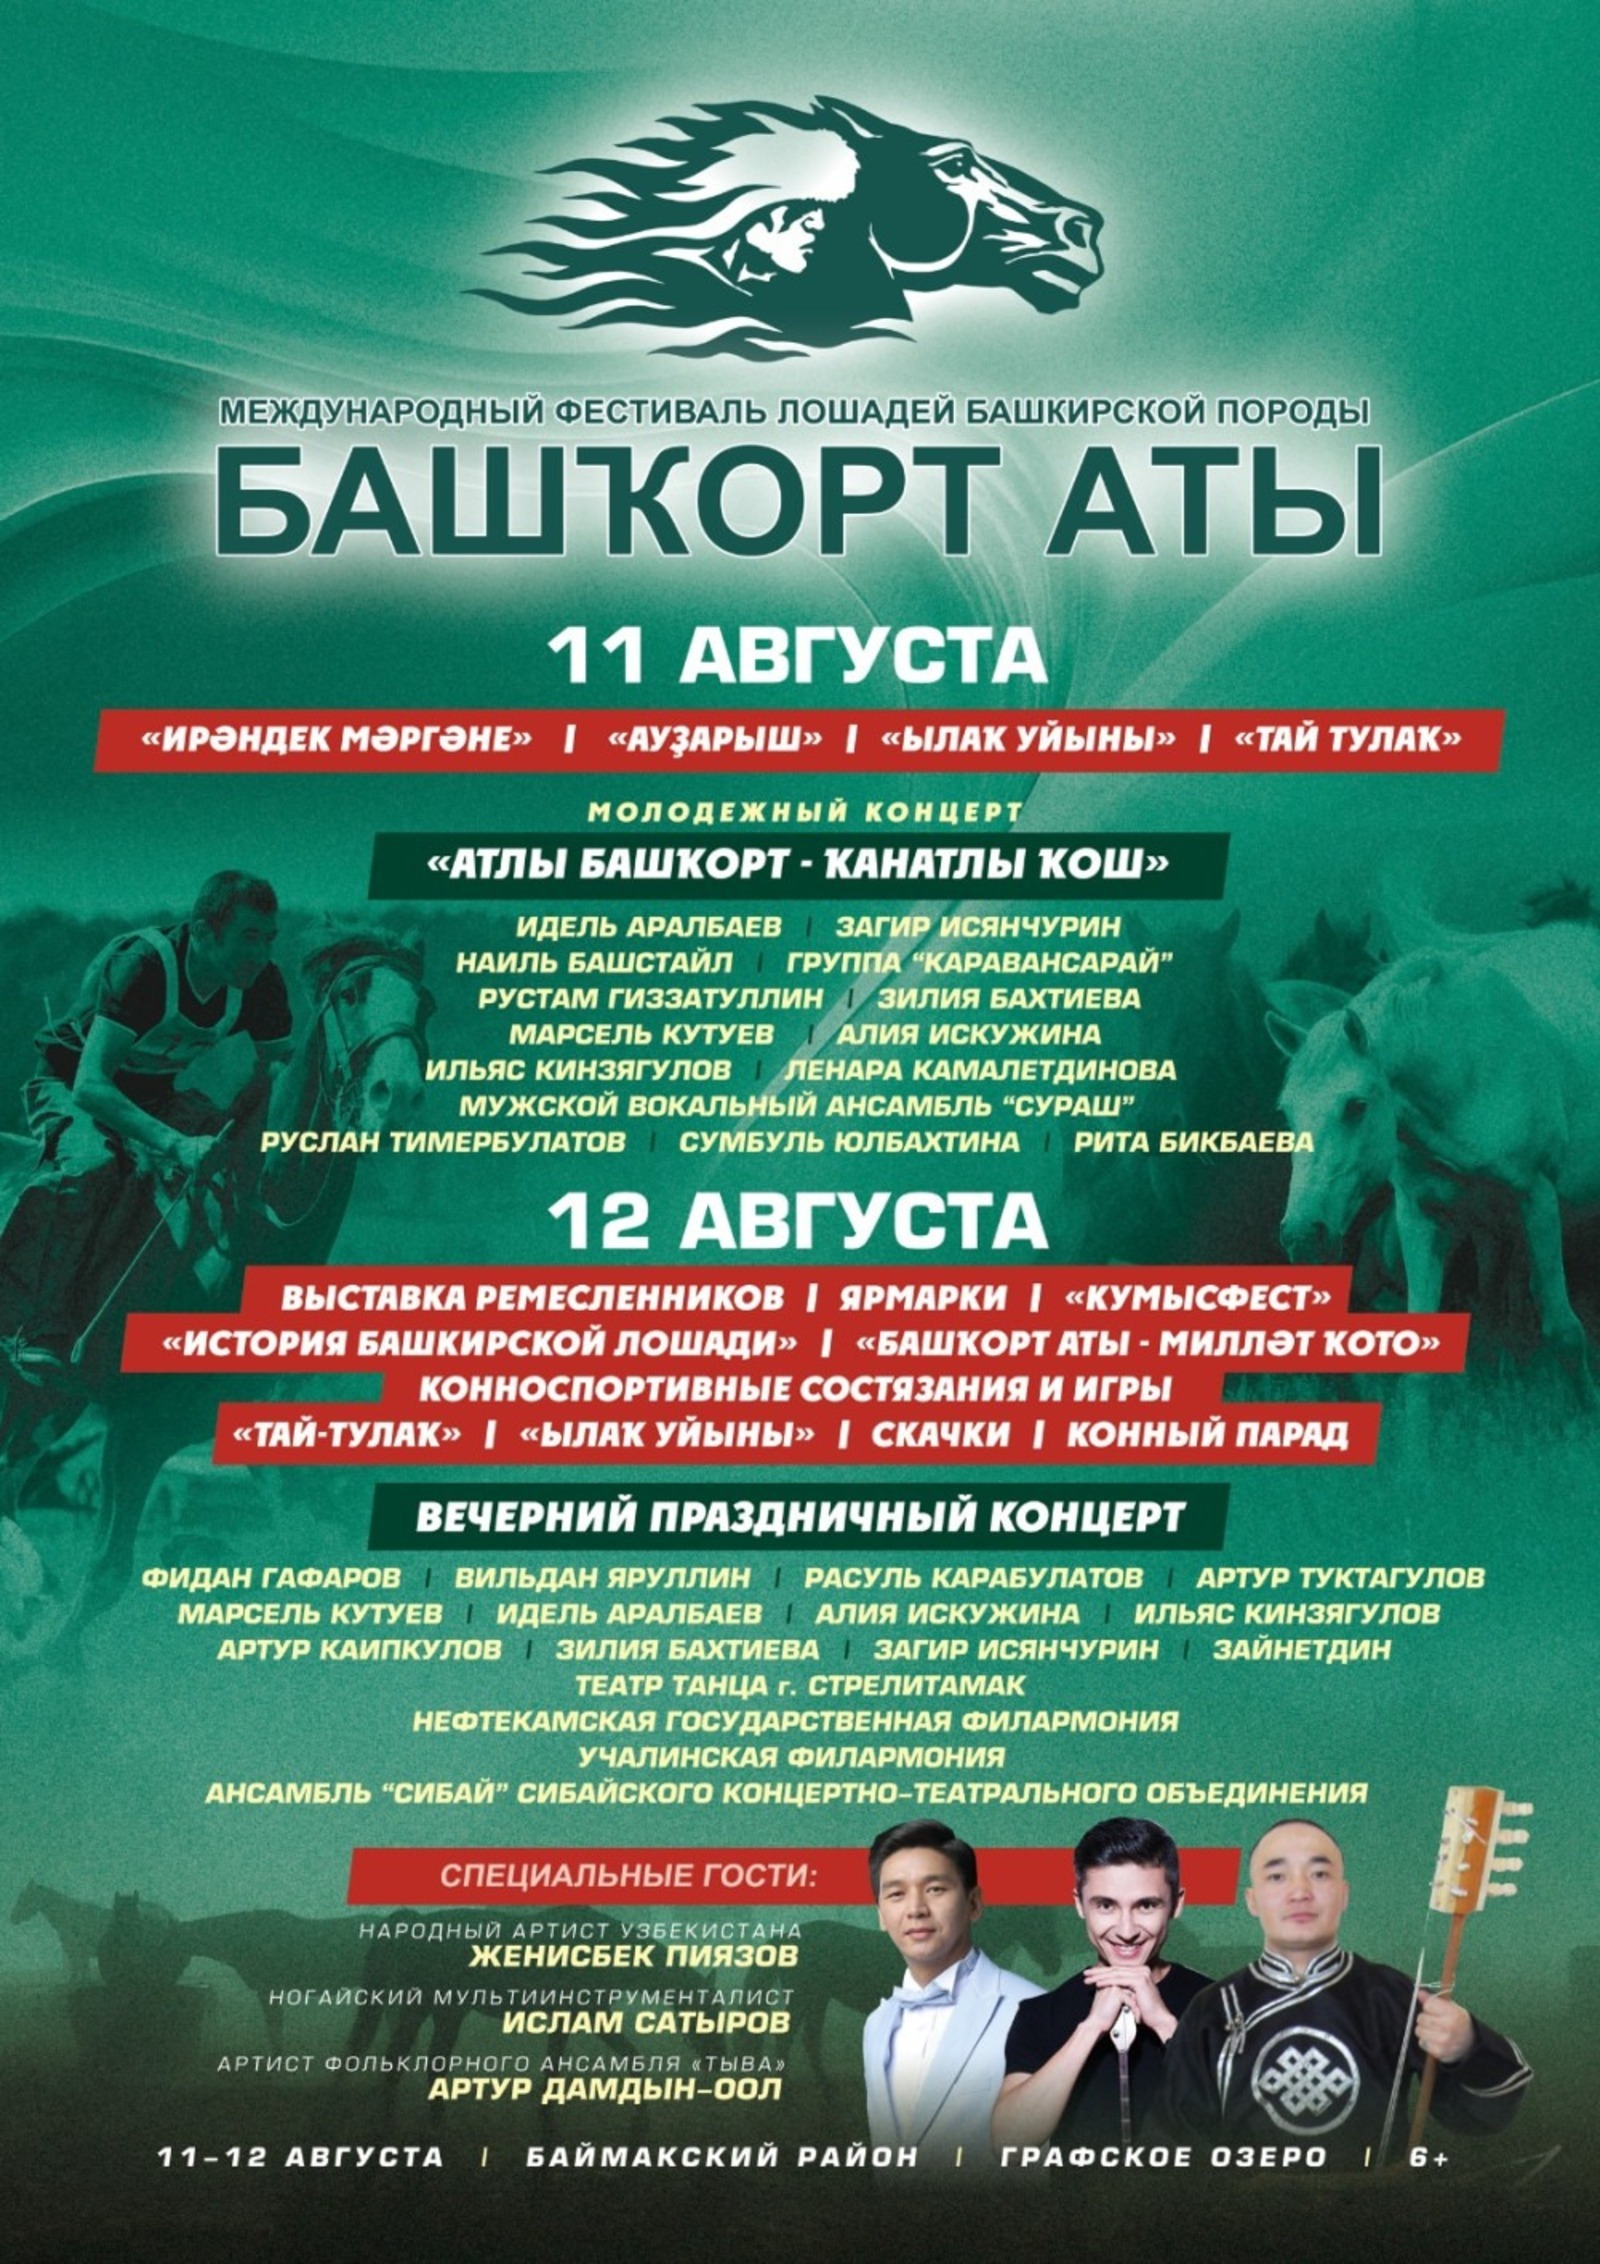 В Башкирии утверждена культурная программа фестиваля лошадей башкирской породы